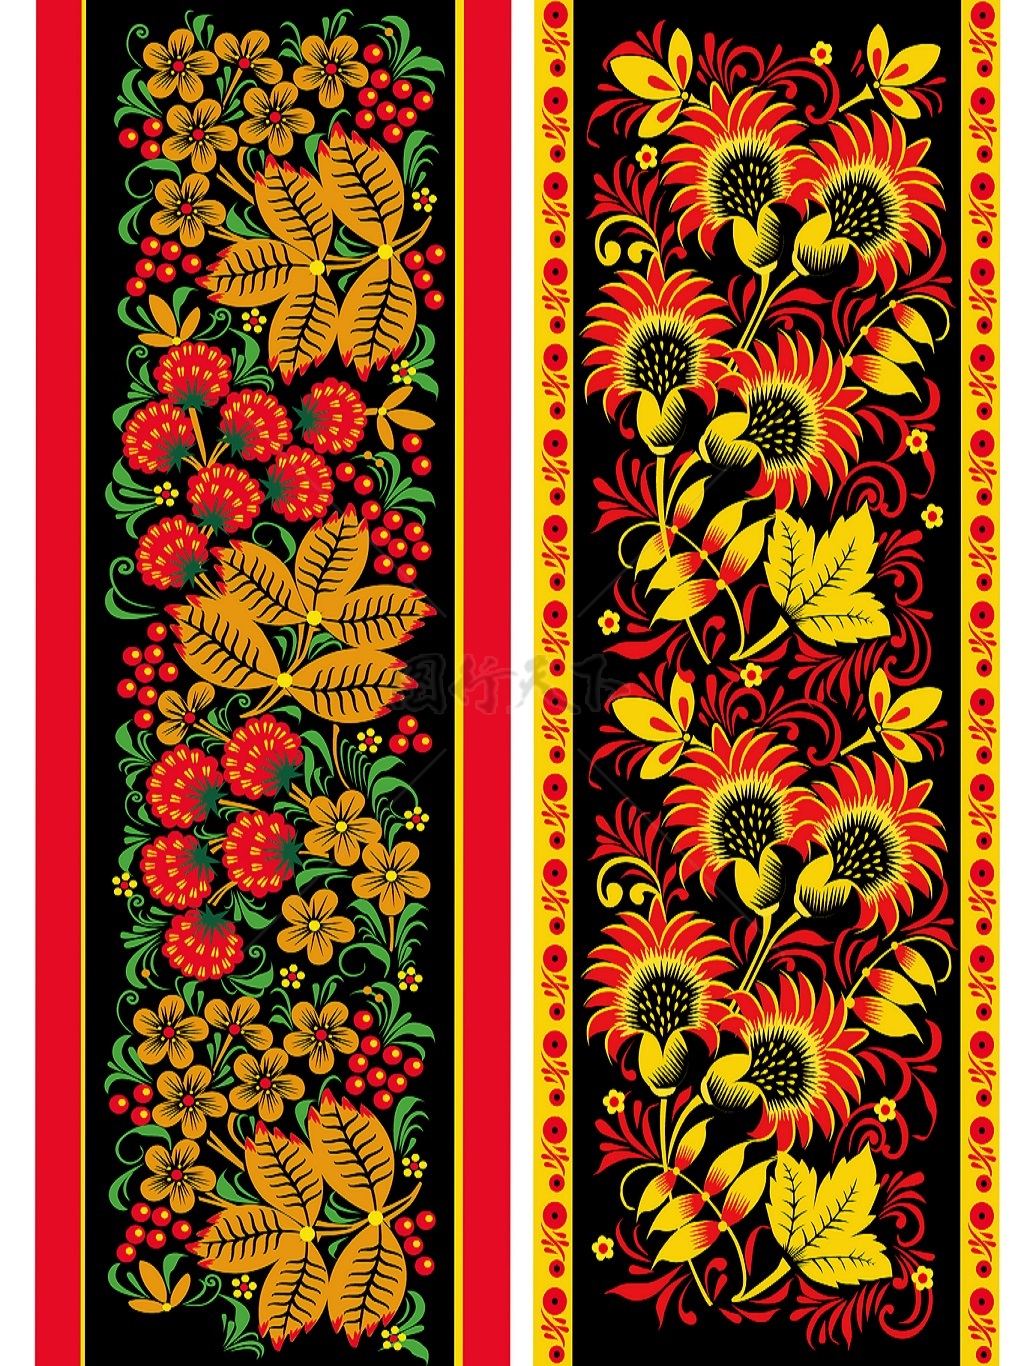  高清 传统 欧式俄式花边 花卉图案背景贴图 黑底黄红花边